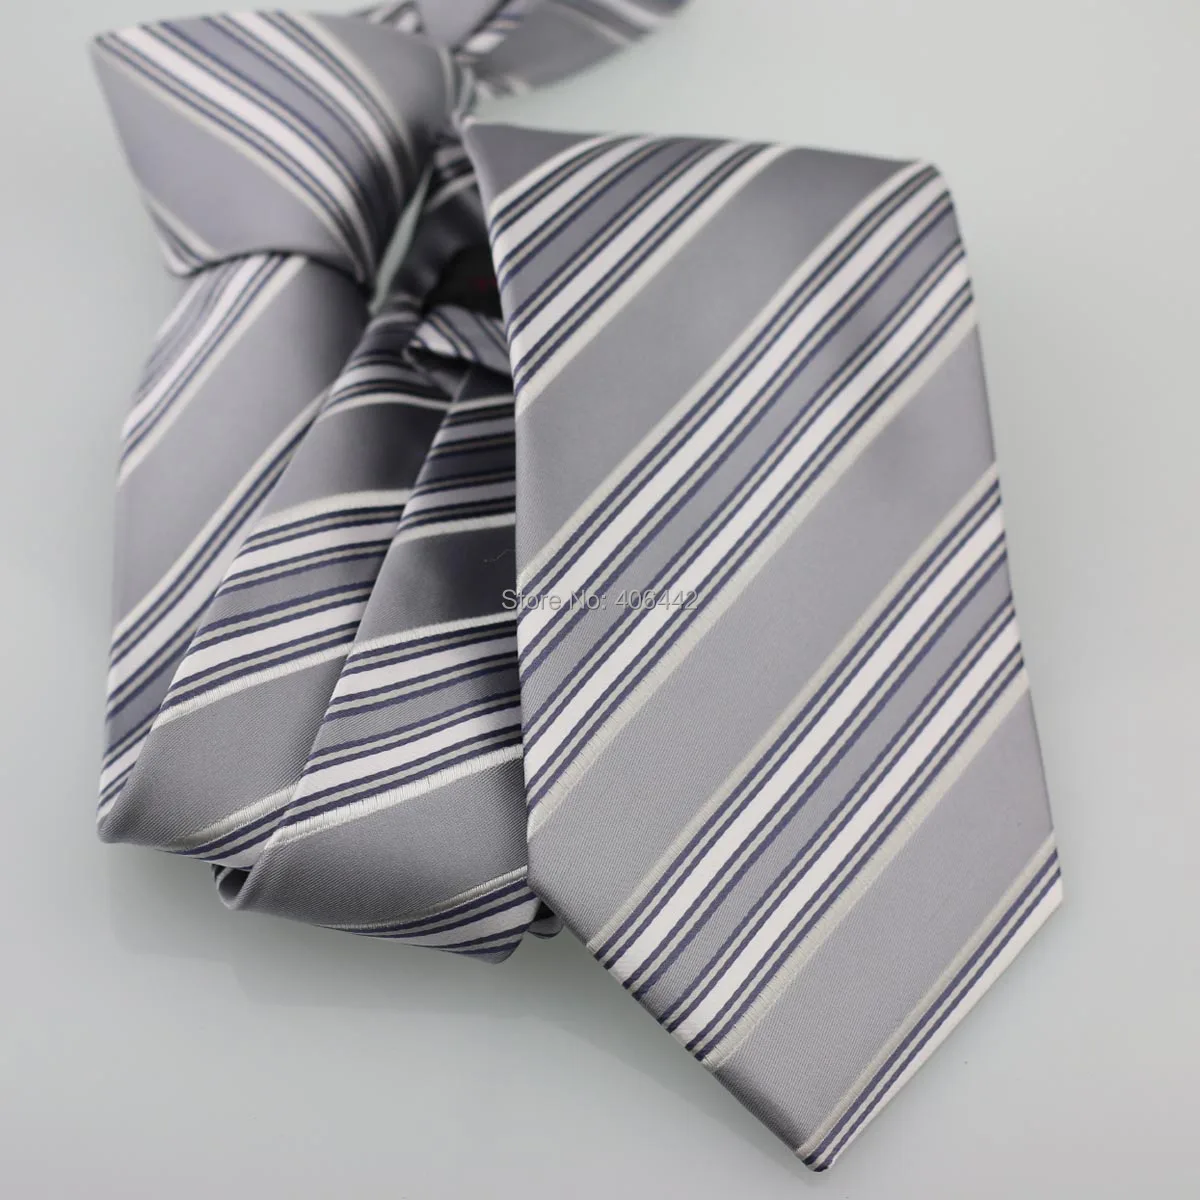 Coachella Мужские галстуки серые с белыми диагональными полосками жаккардовые тканые галстуки формальные шеи галстук для мужчин платье рубашки свадьбы